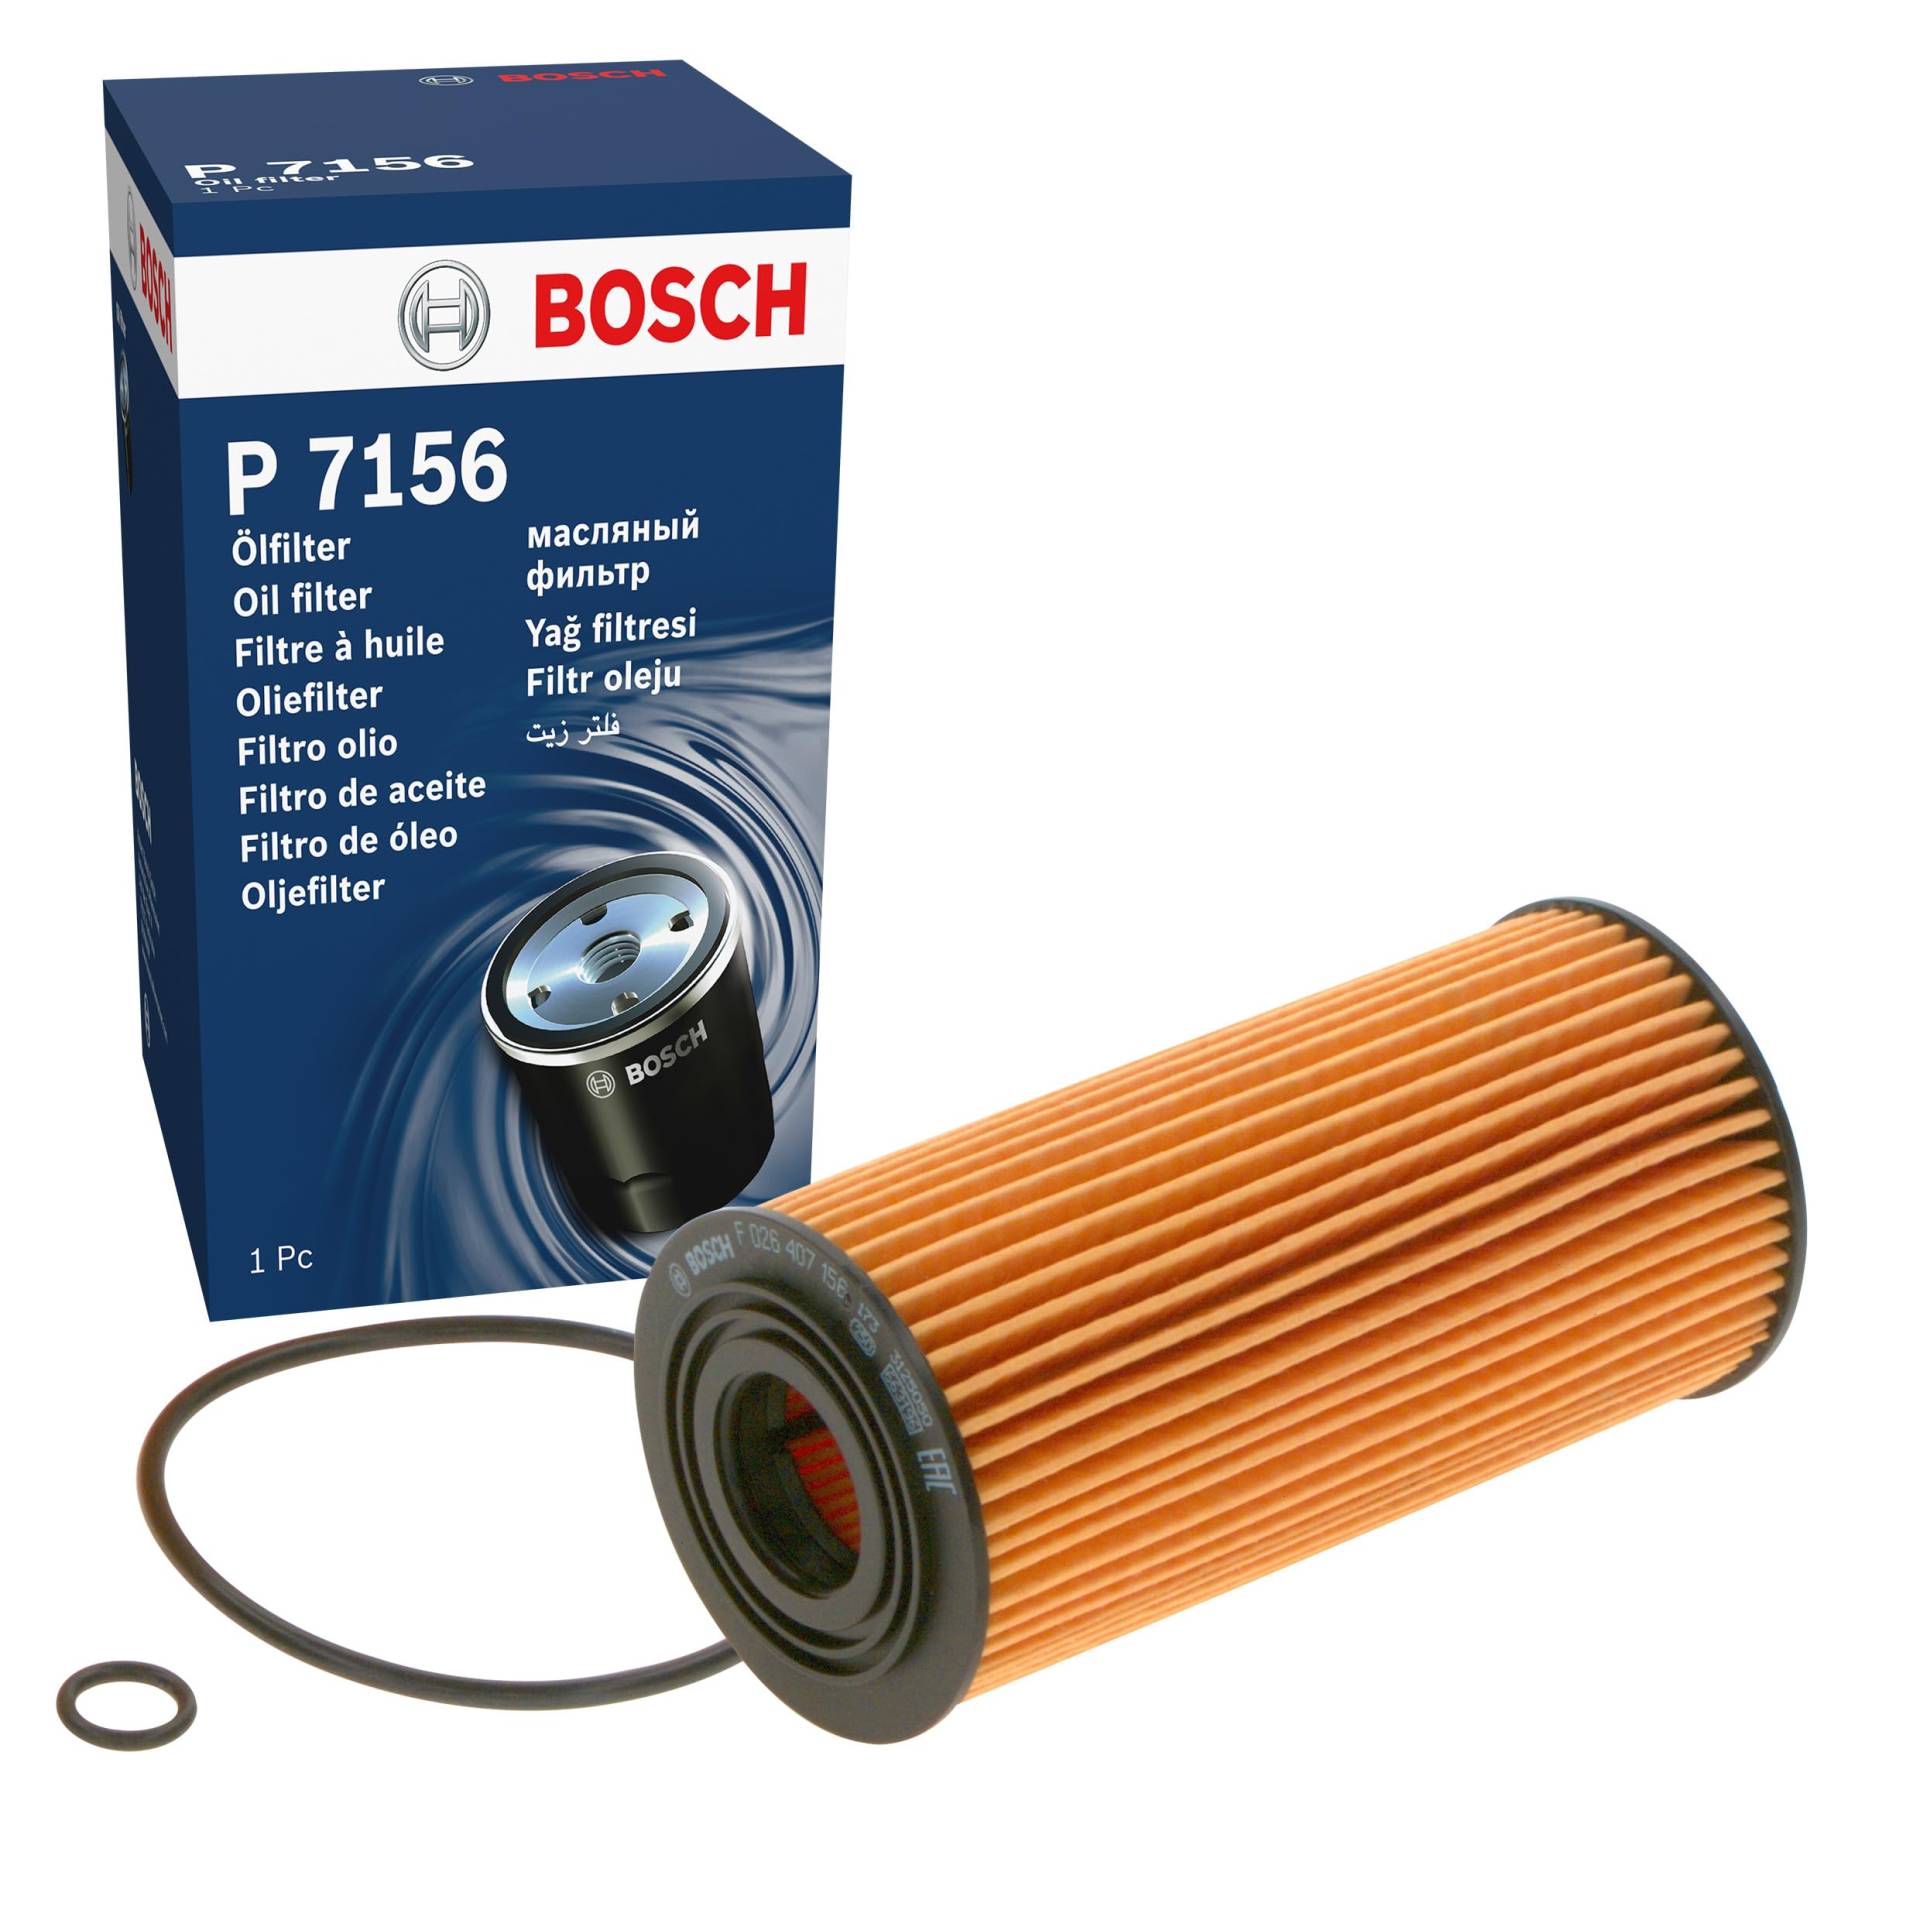 Bosch P7156 - Ölfilter Auto von Bosch Automotive